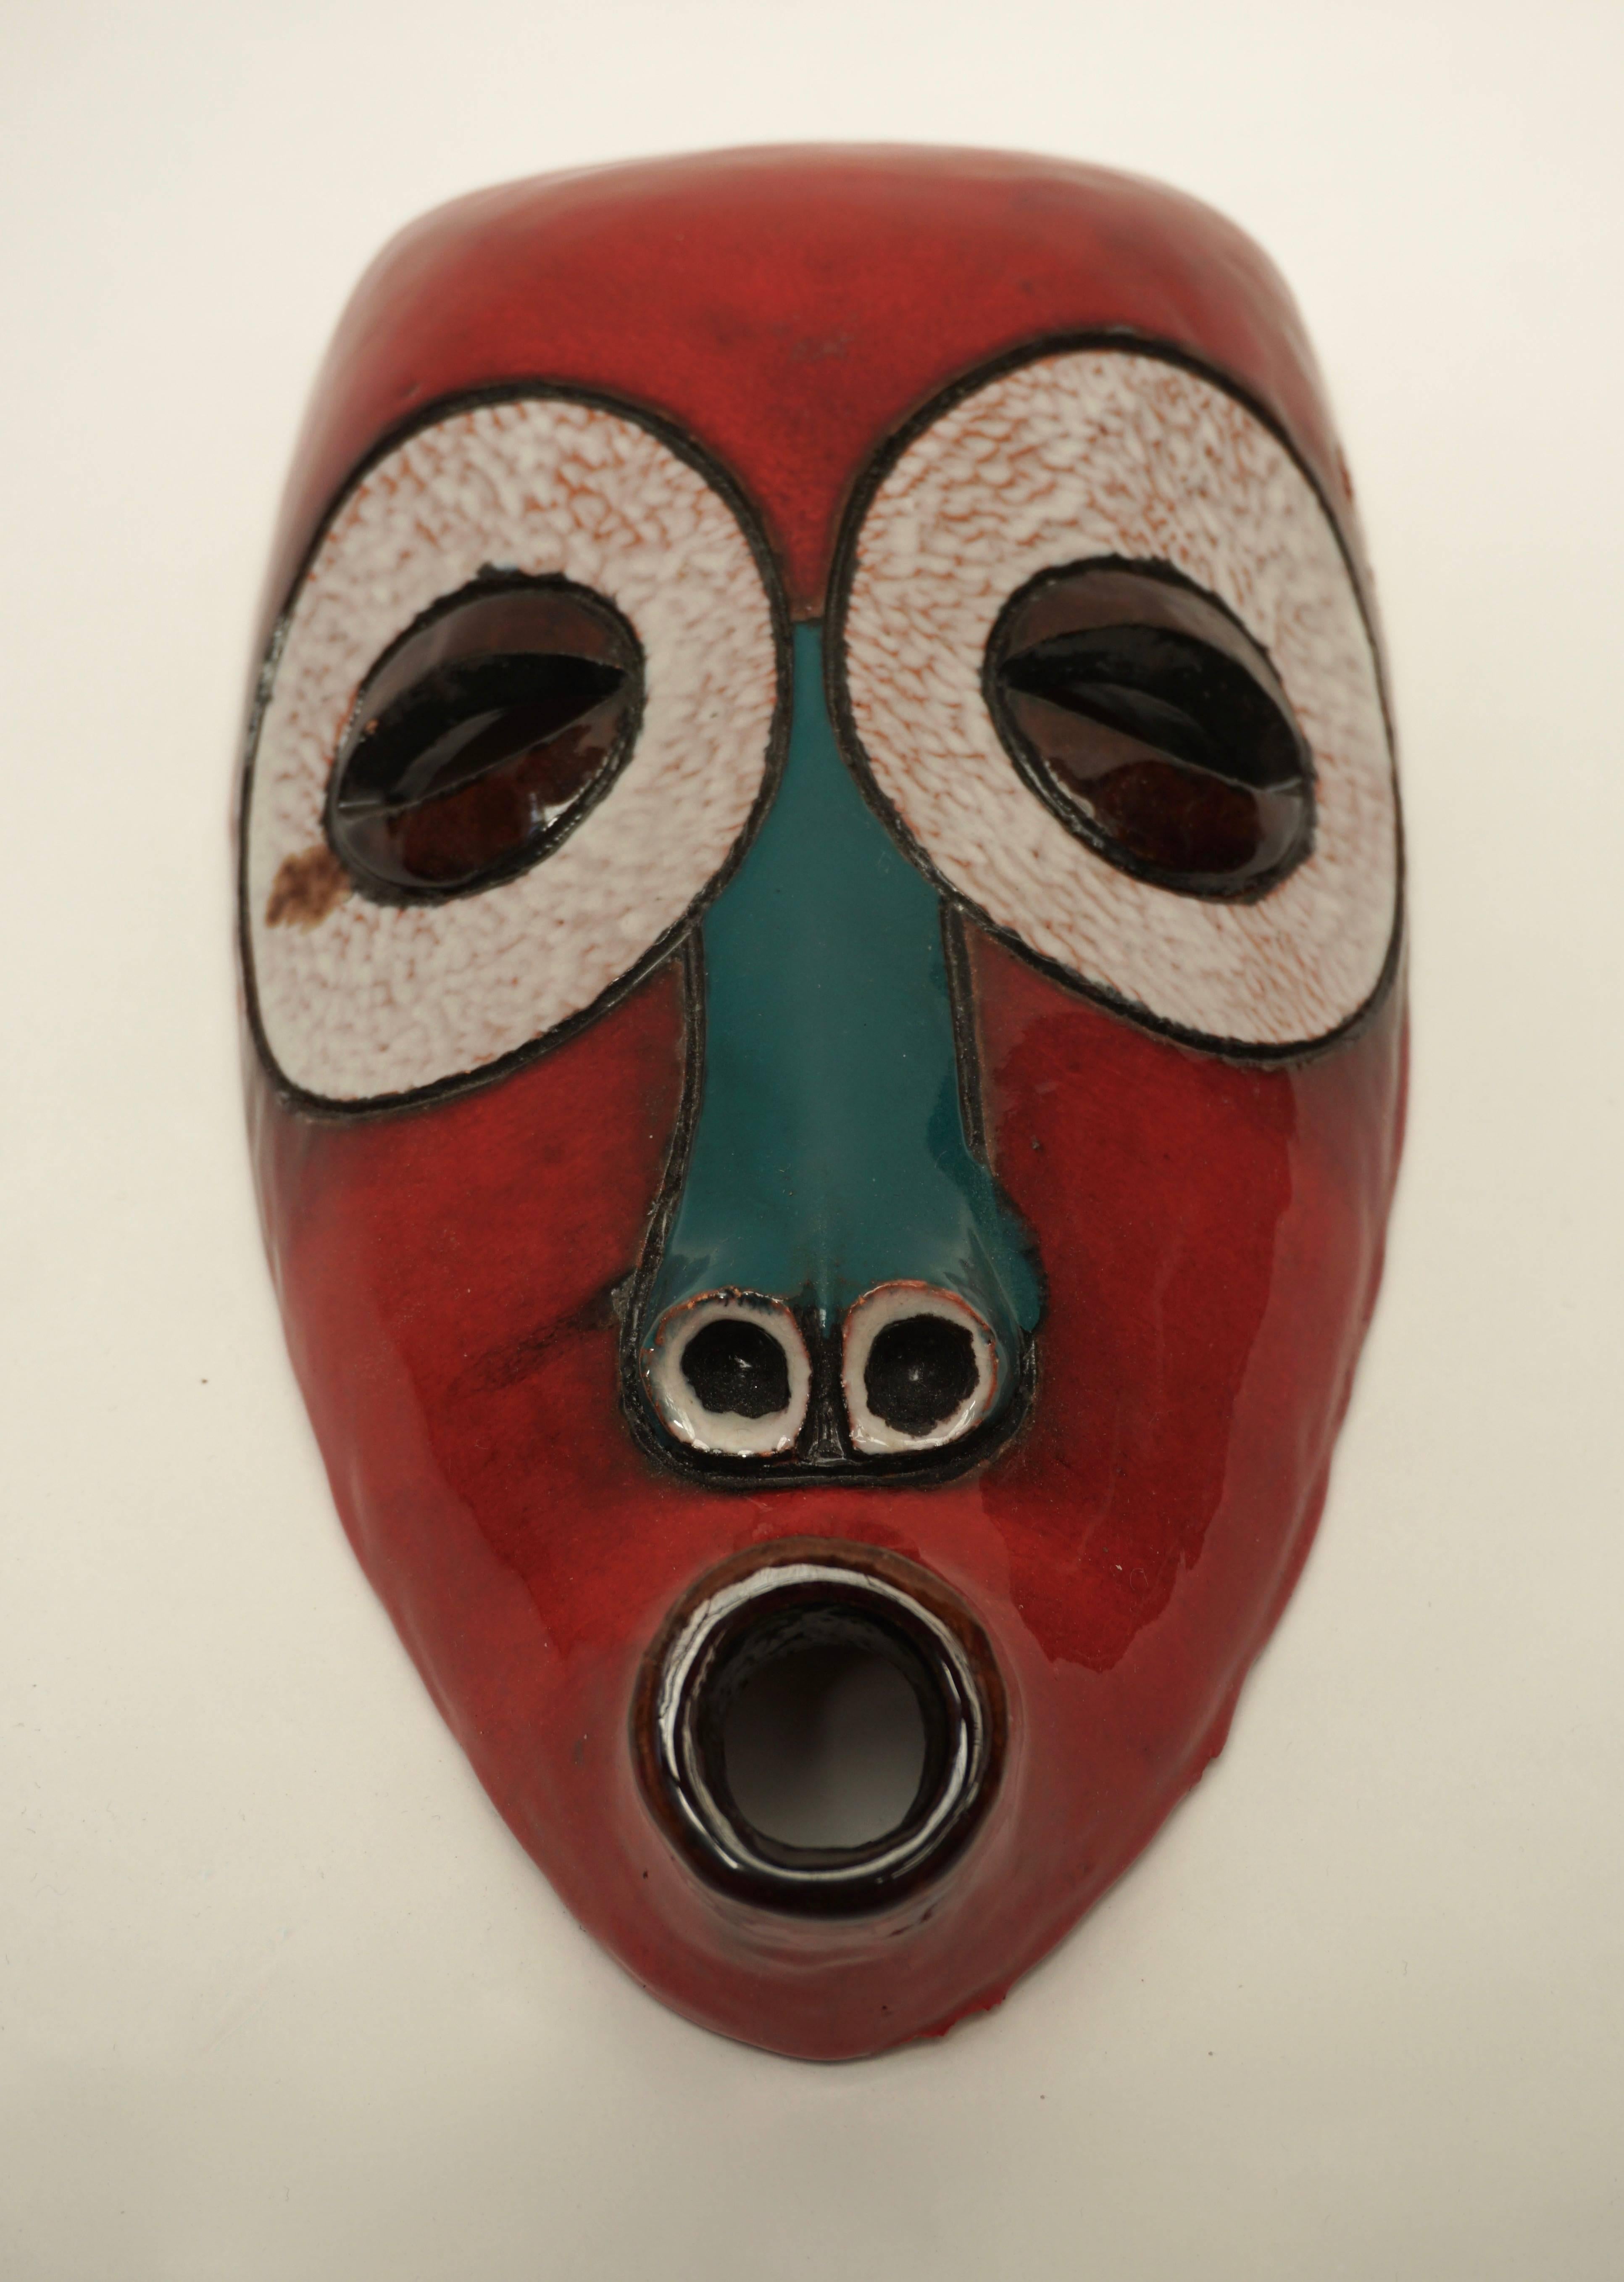 Keramische Maske, Baku Ghana.
Unterzeichnet: AT Manteto, Baku 1974.
Maße: Höhe 32 cm.
Breite 17 cm.
Tiefe 8 cm.